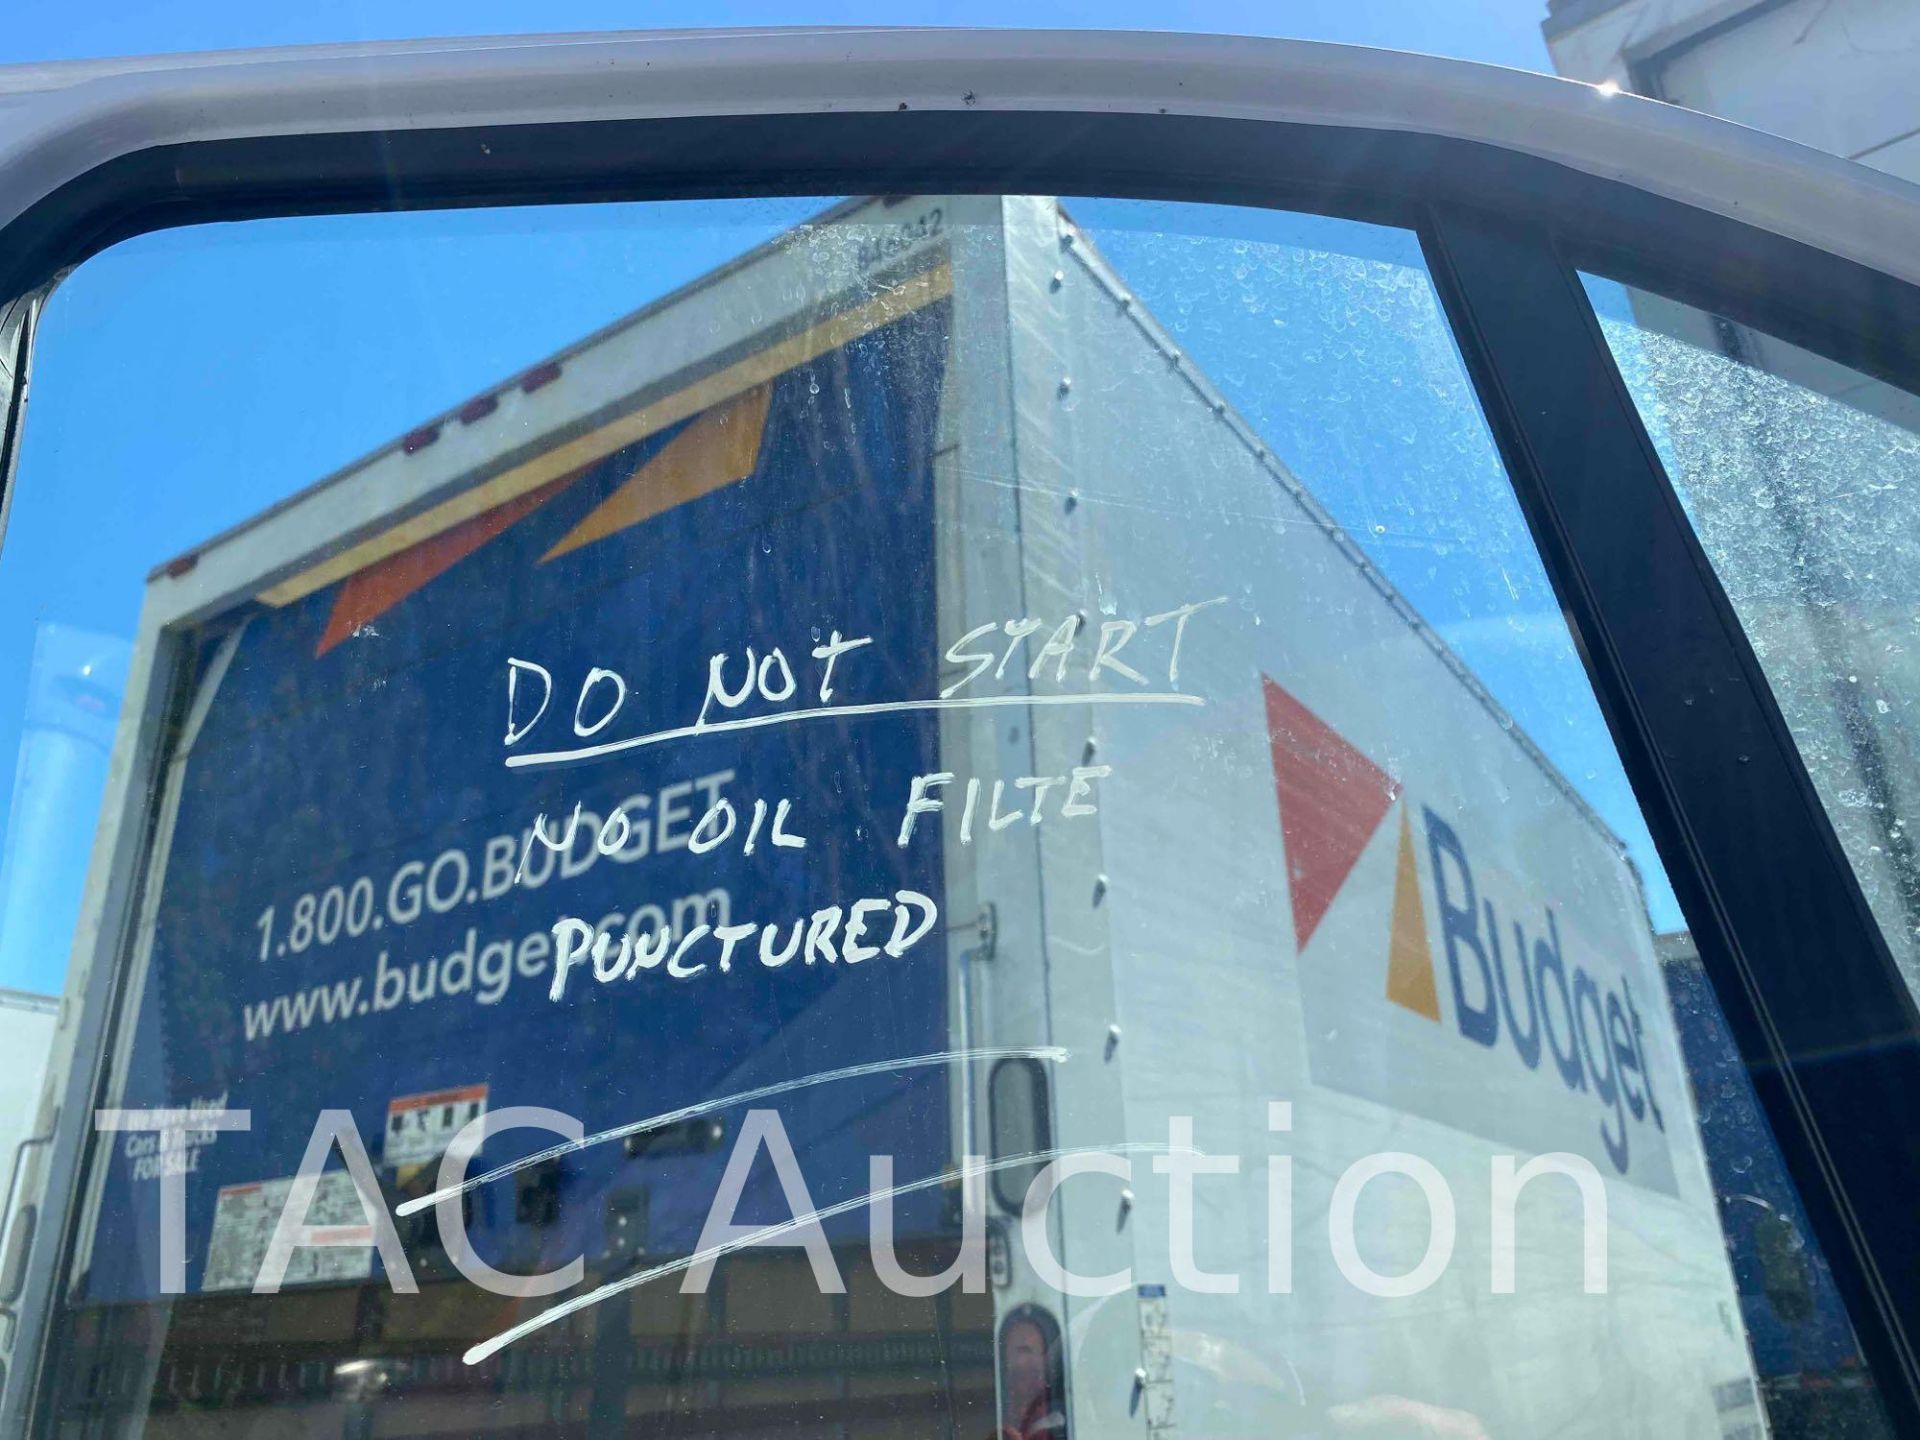 2019 Ford Transit 150 Cargo Van - Image 16 of 50